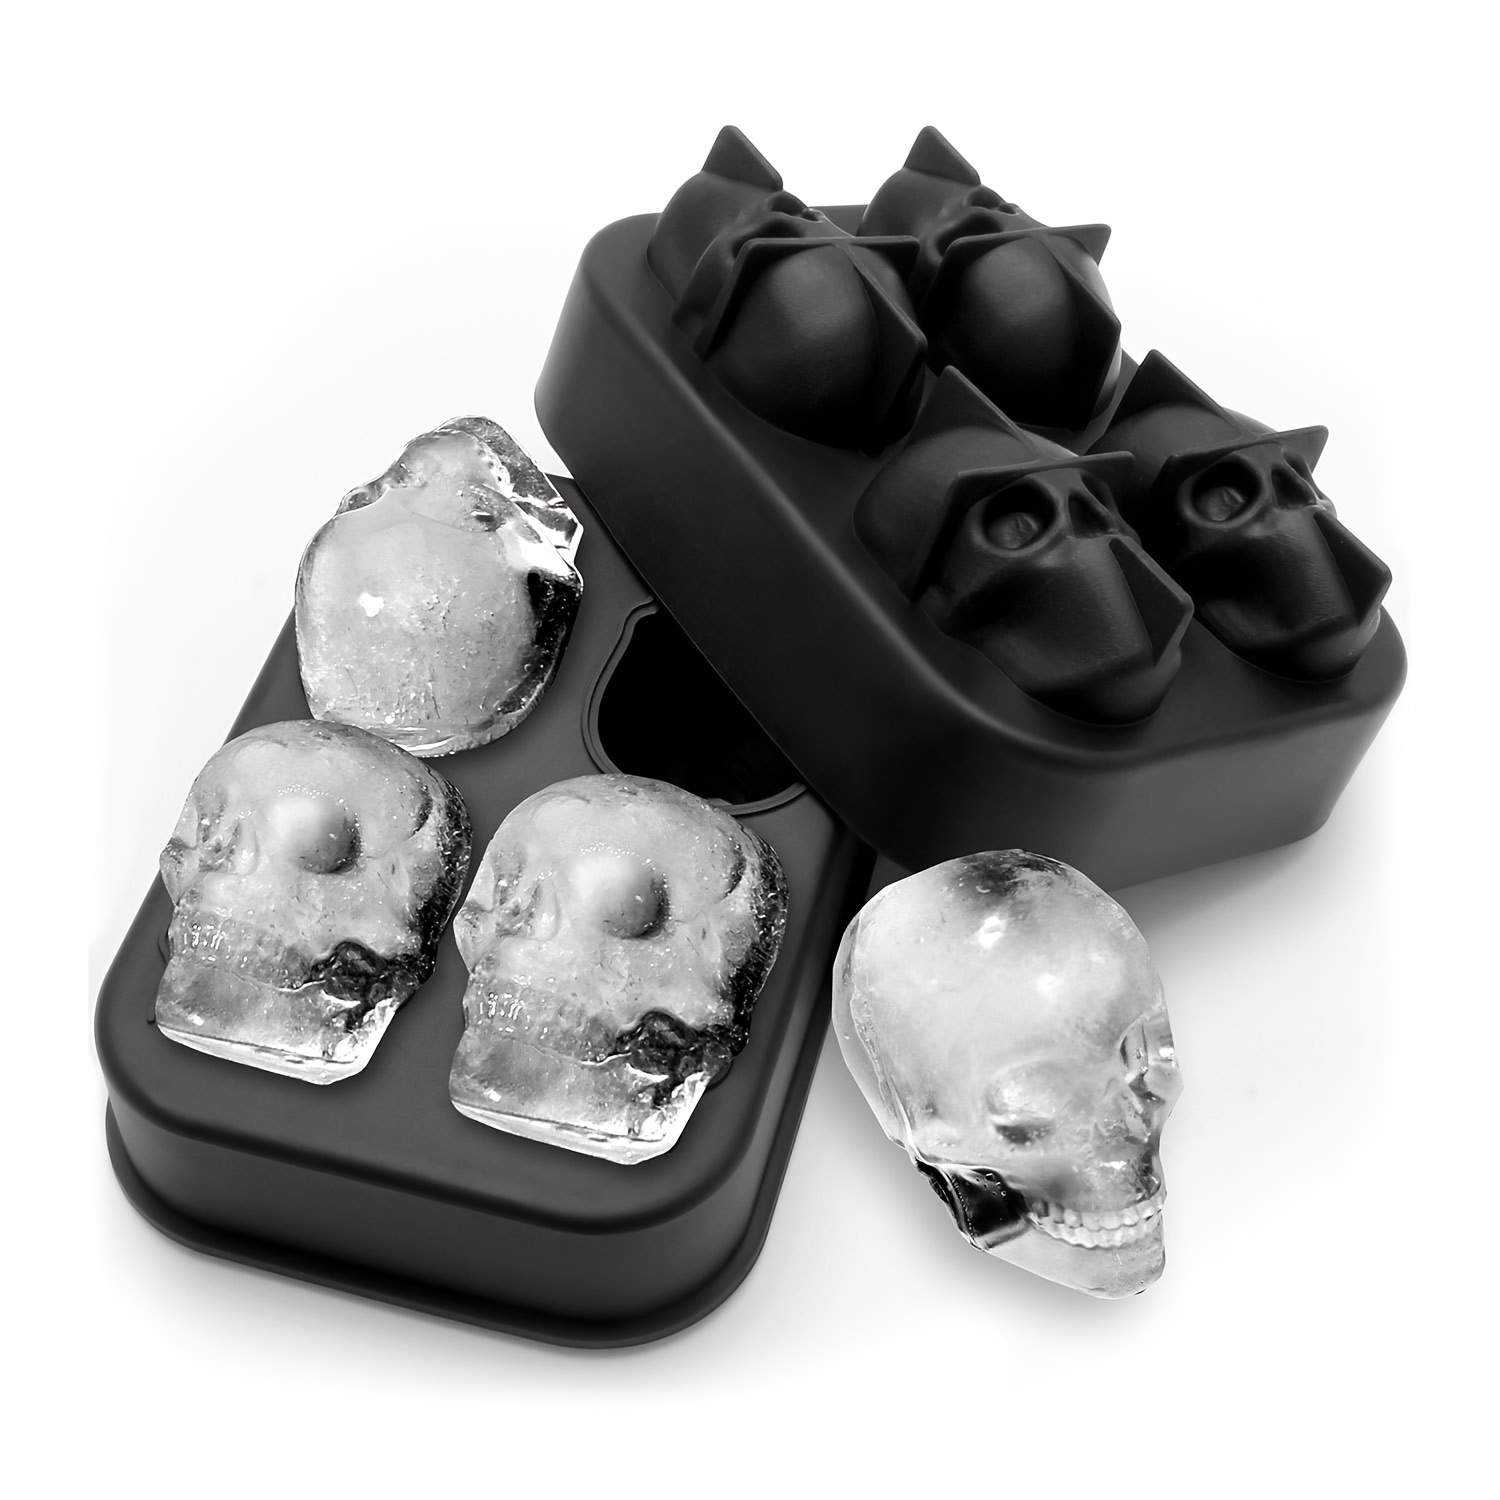  Stritra - 3D Skull Silicone Jello Ice Mold Flexible